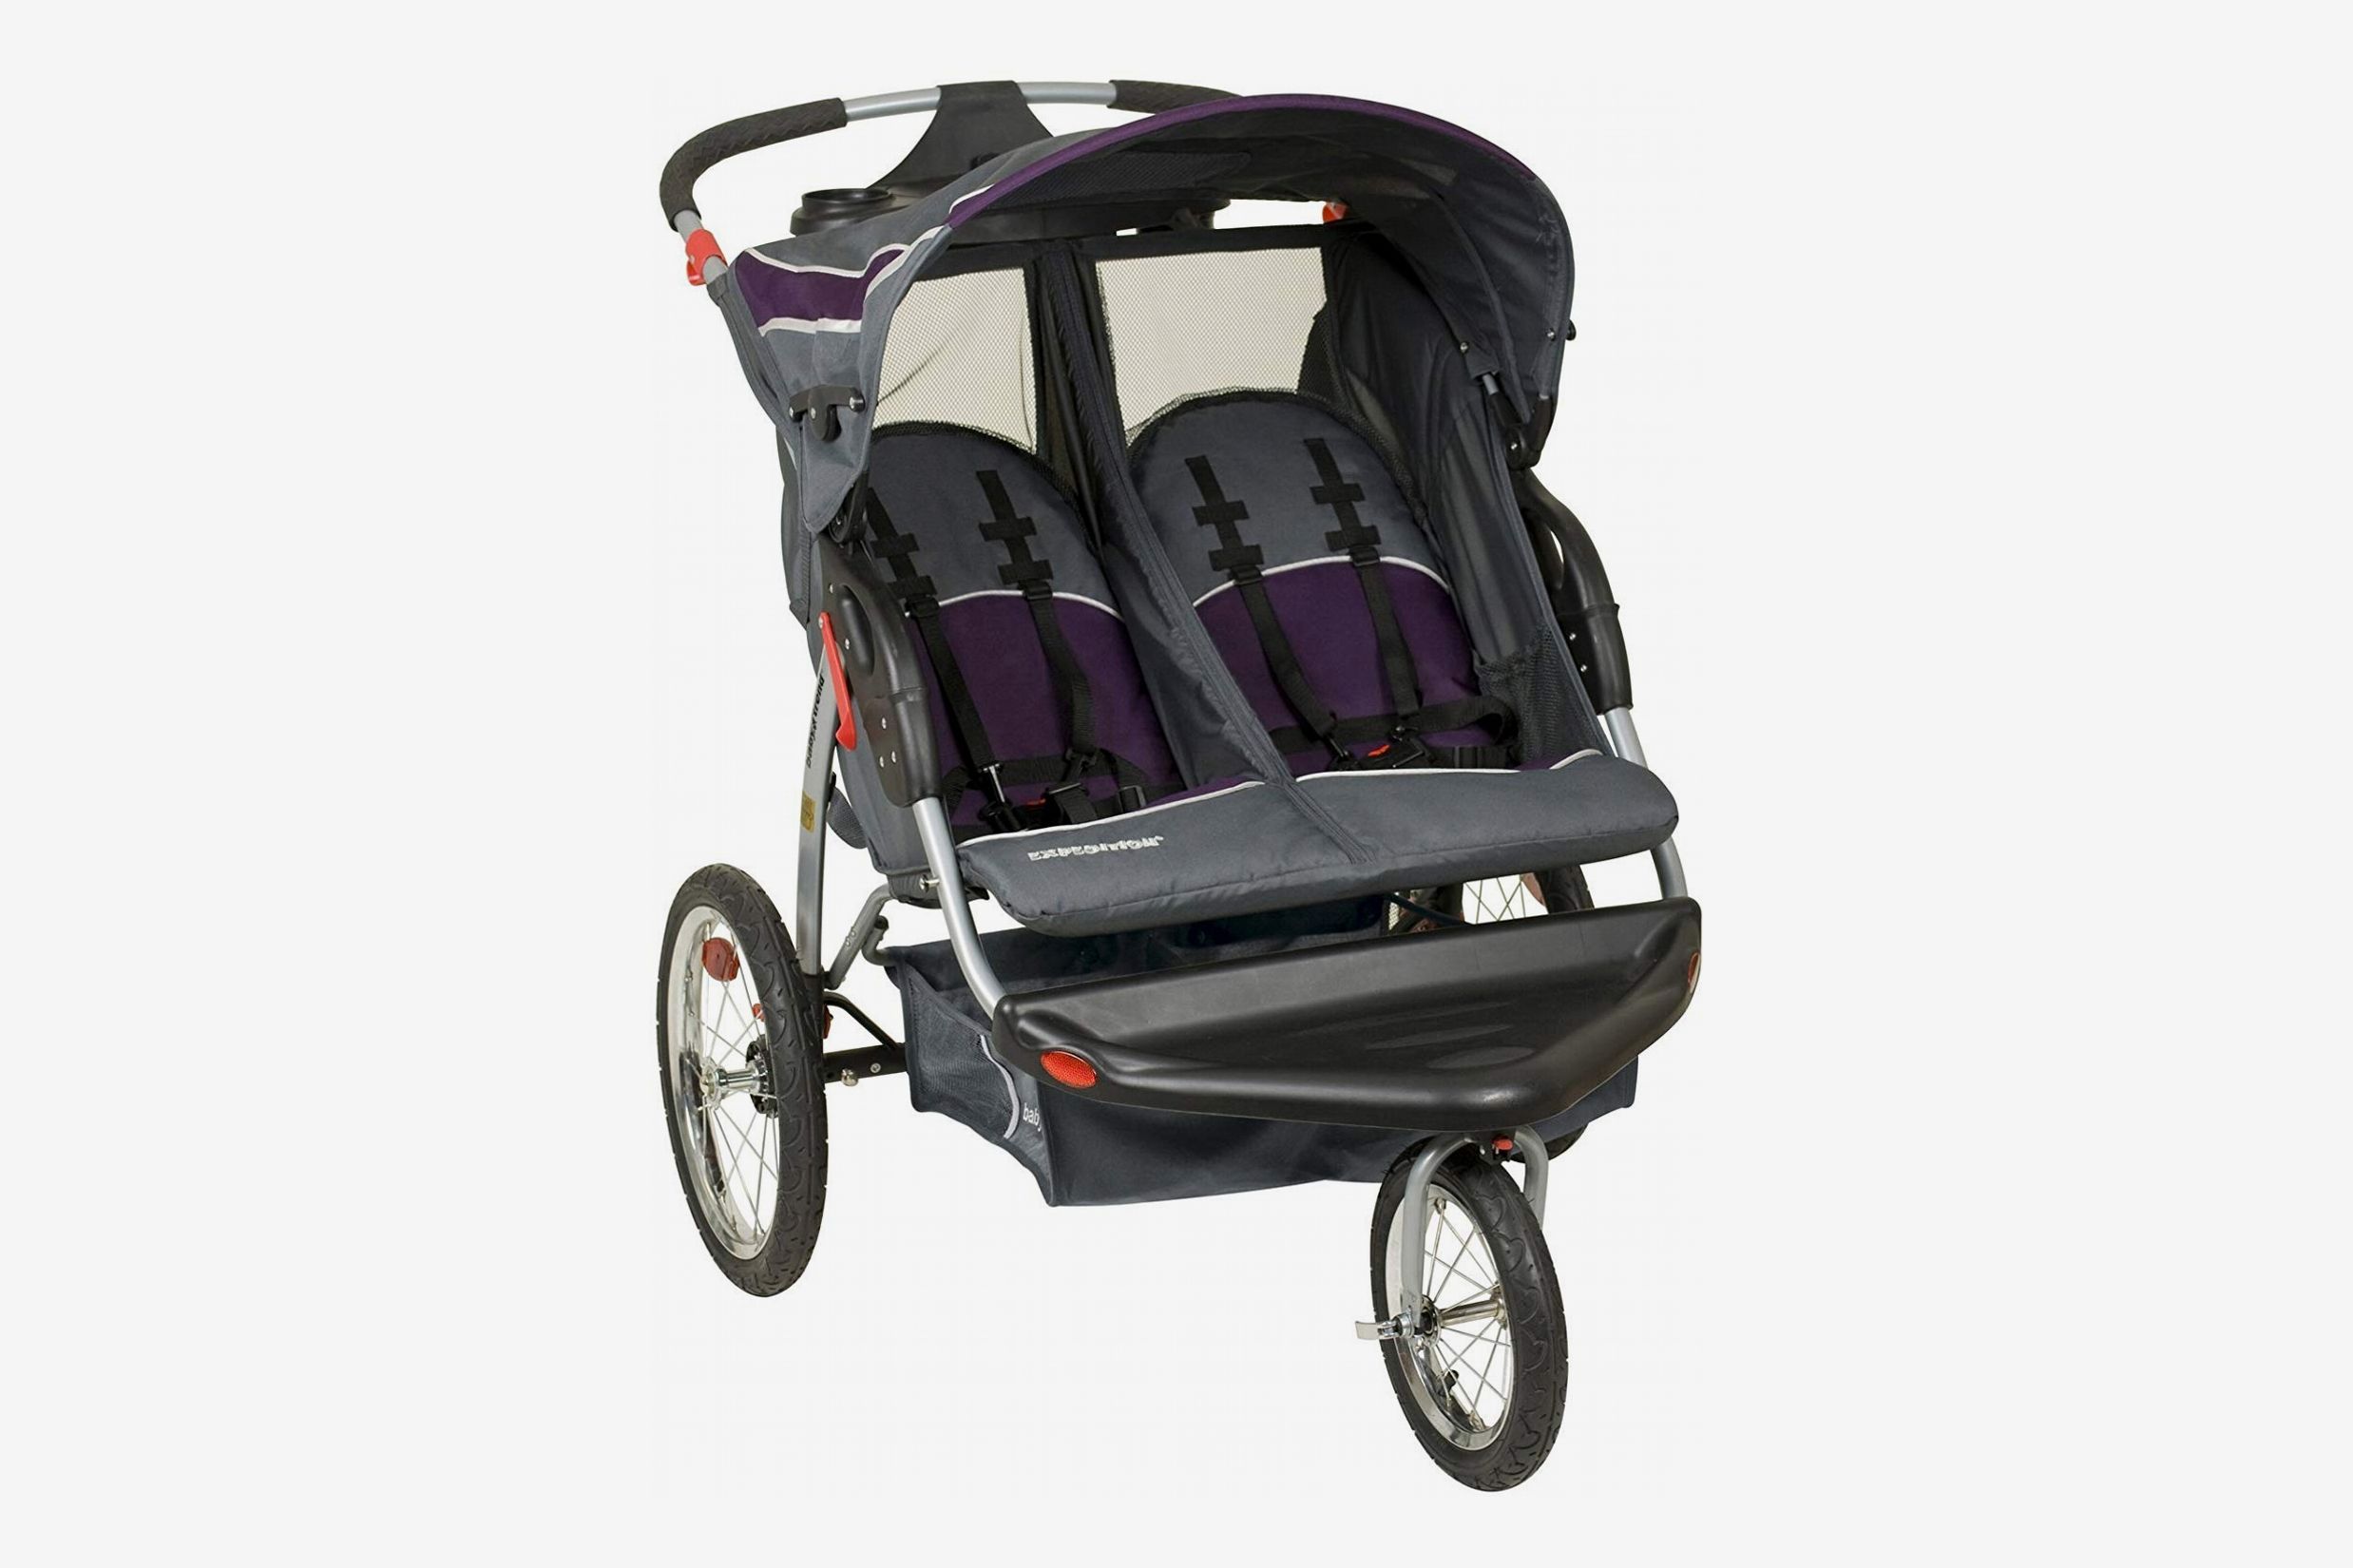 Baby Trend Navigator Double Jogging Stroller, Tropic | vlr.eng.br